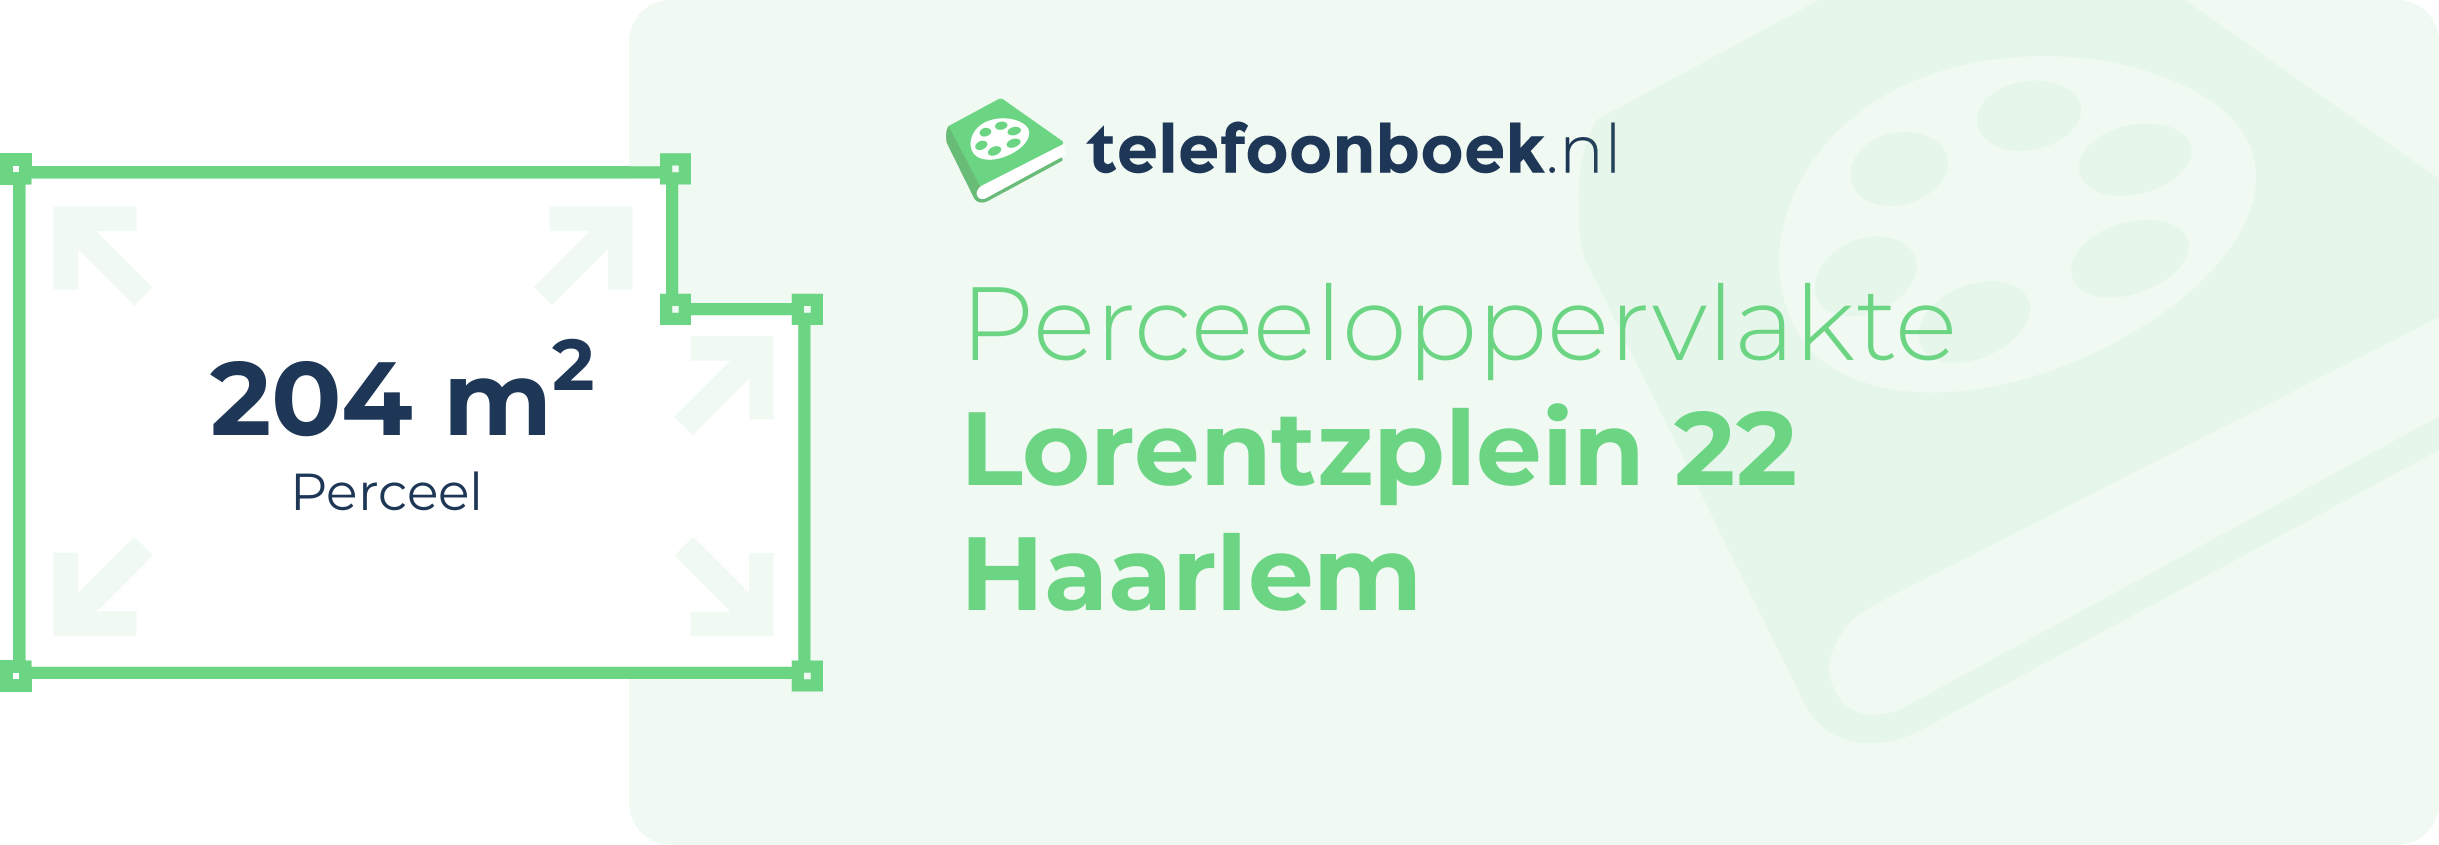 Perceeloppervlakte Lorentzplein 22 Haarlem